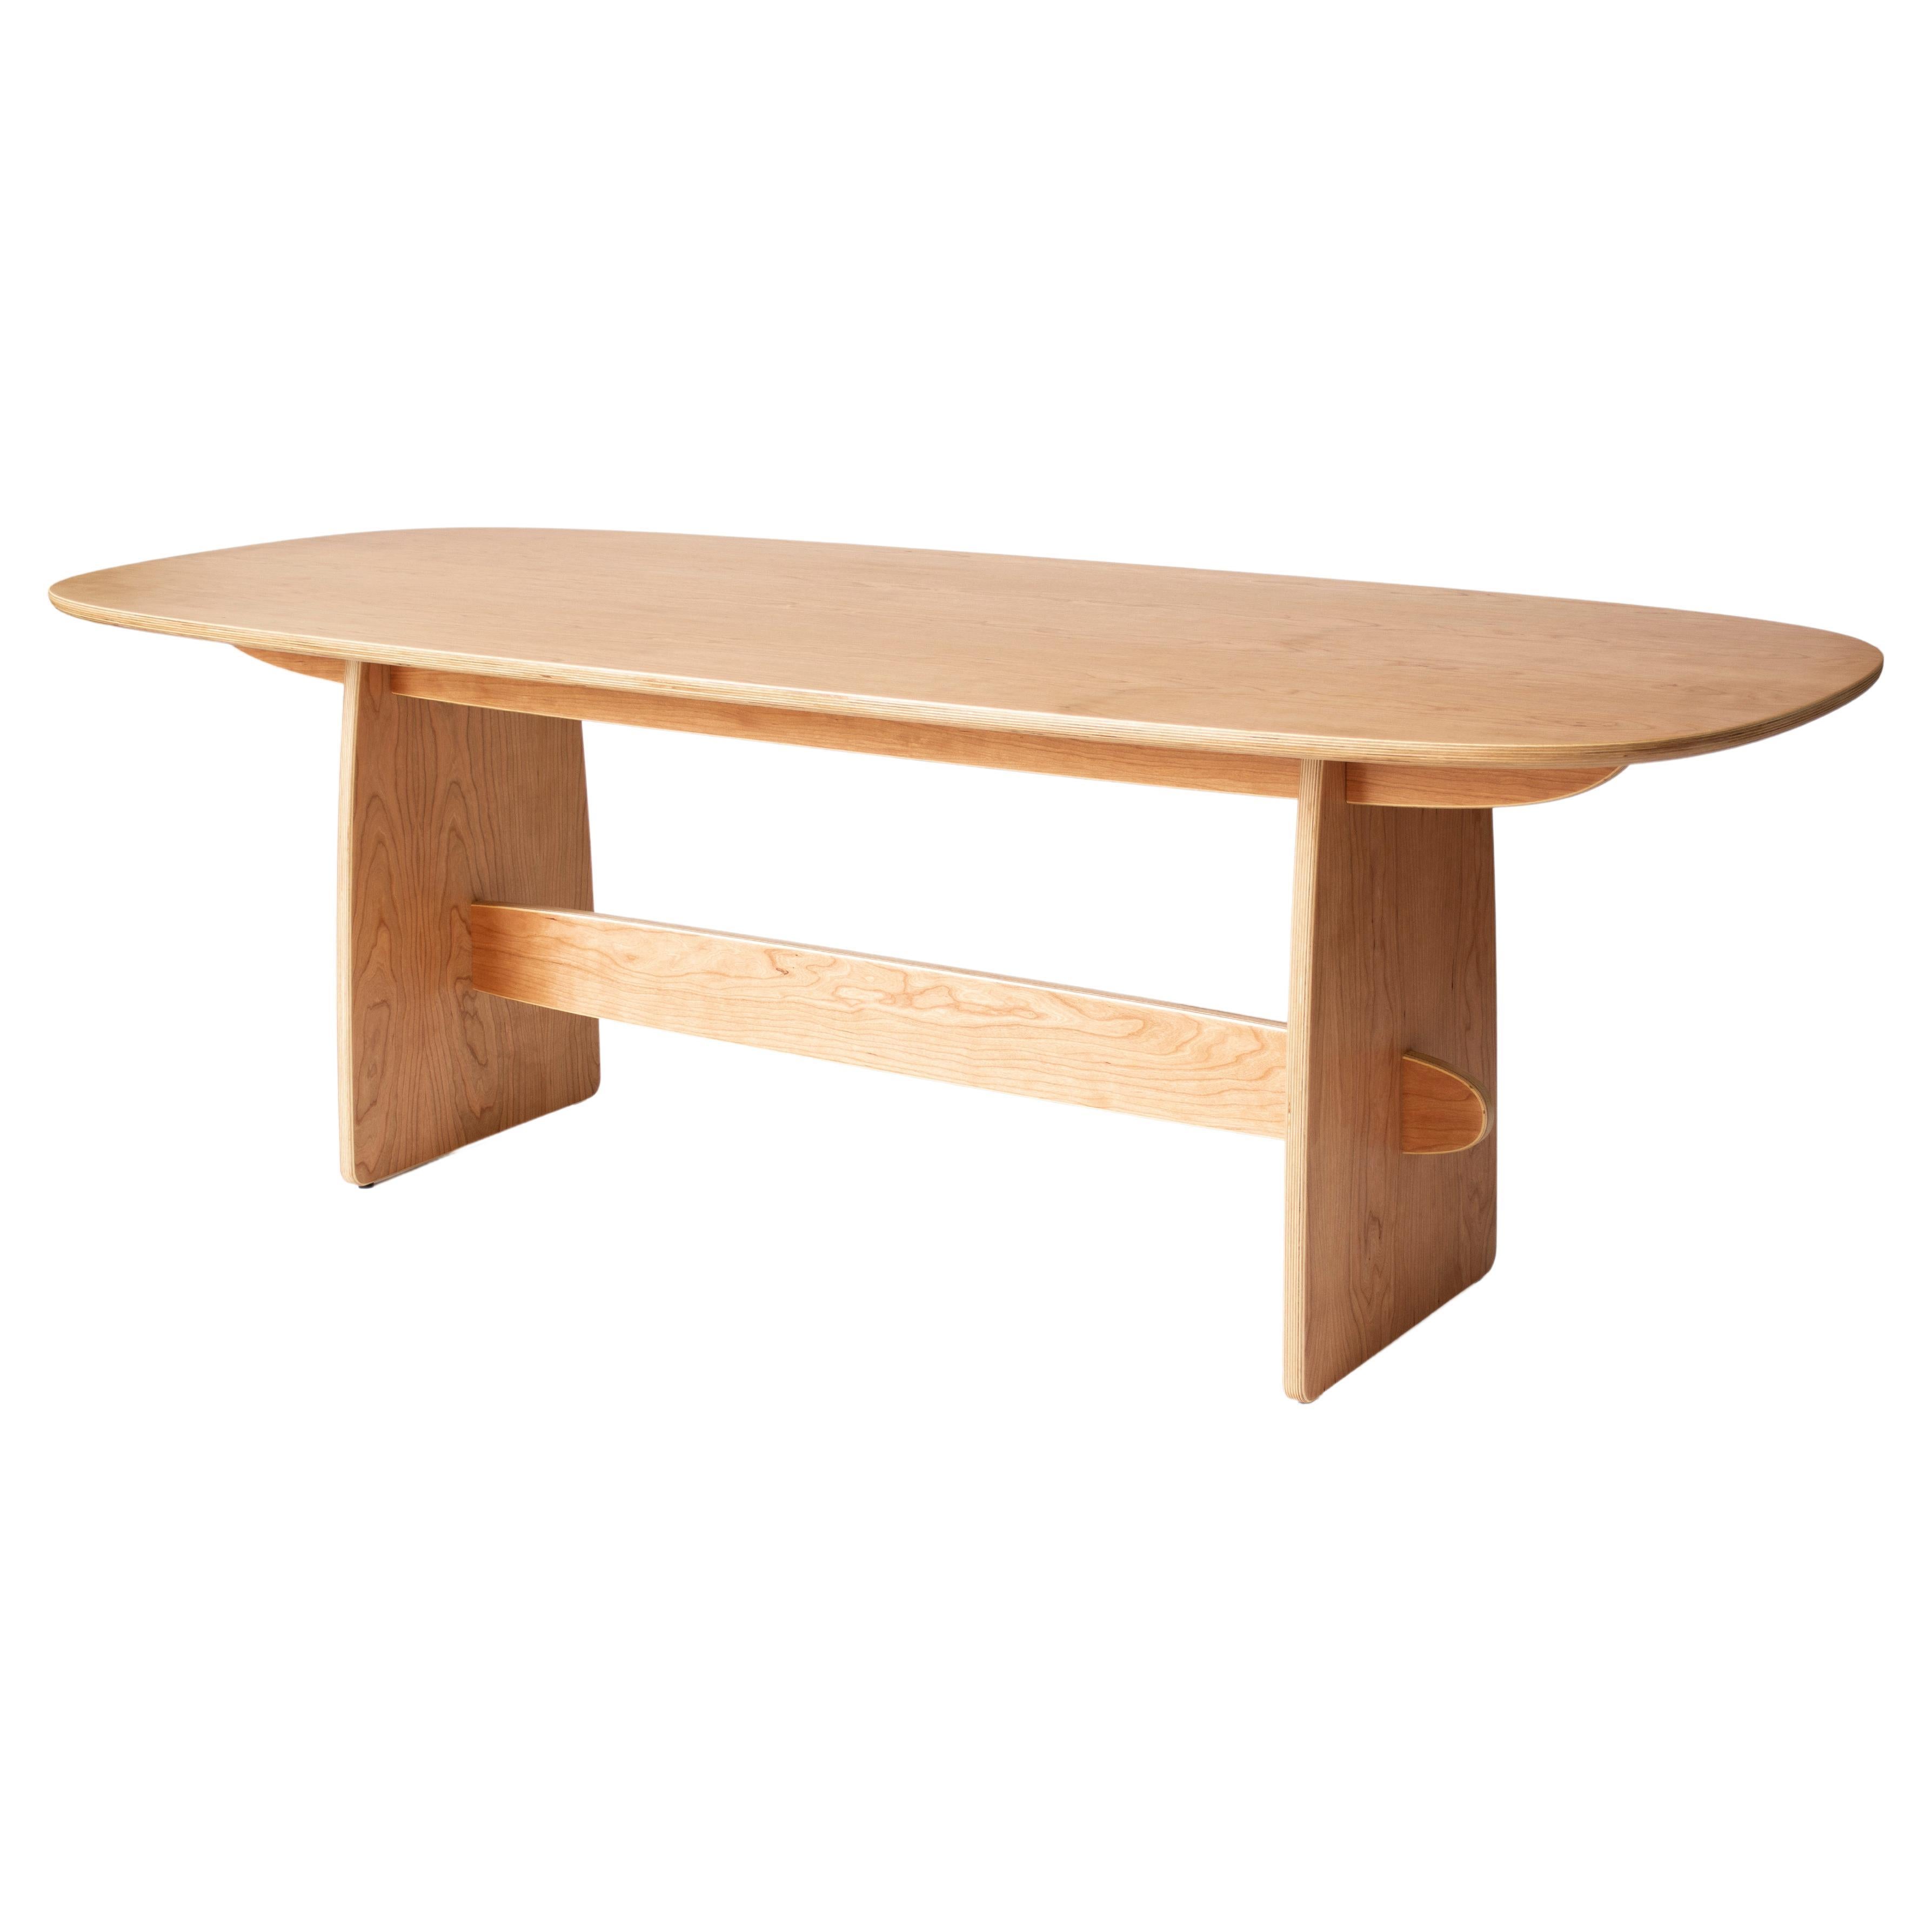 Woodbine Dining Table in cherry veneer hardwood plywood by KLN Studio For Sale